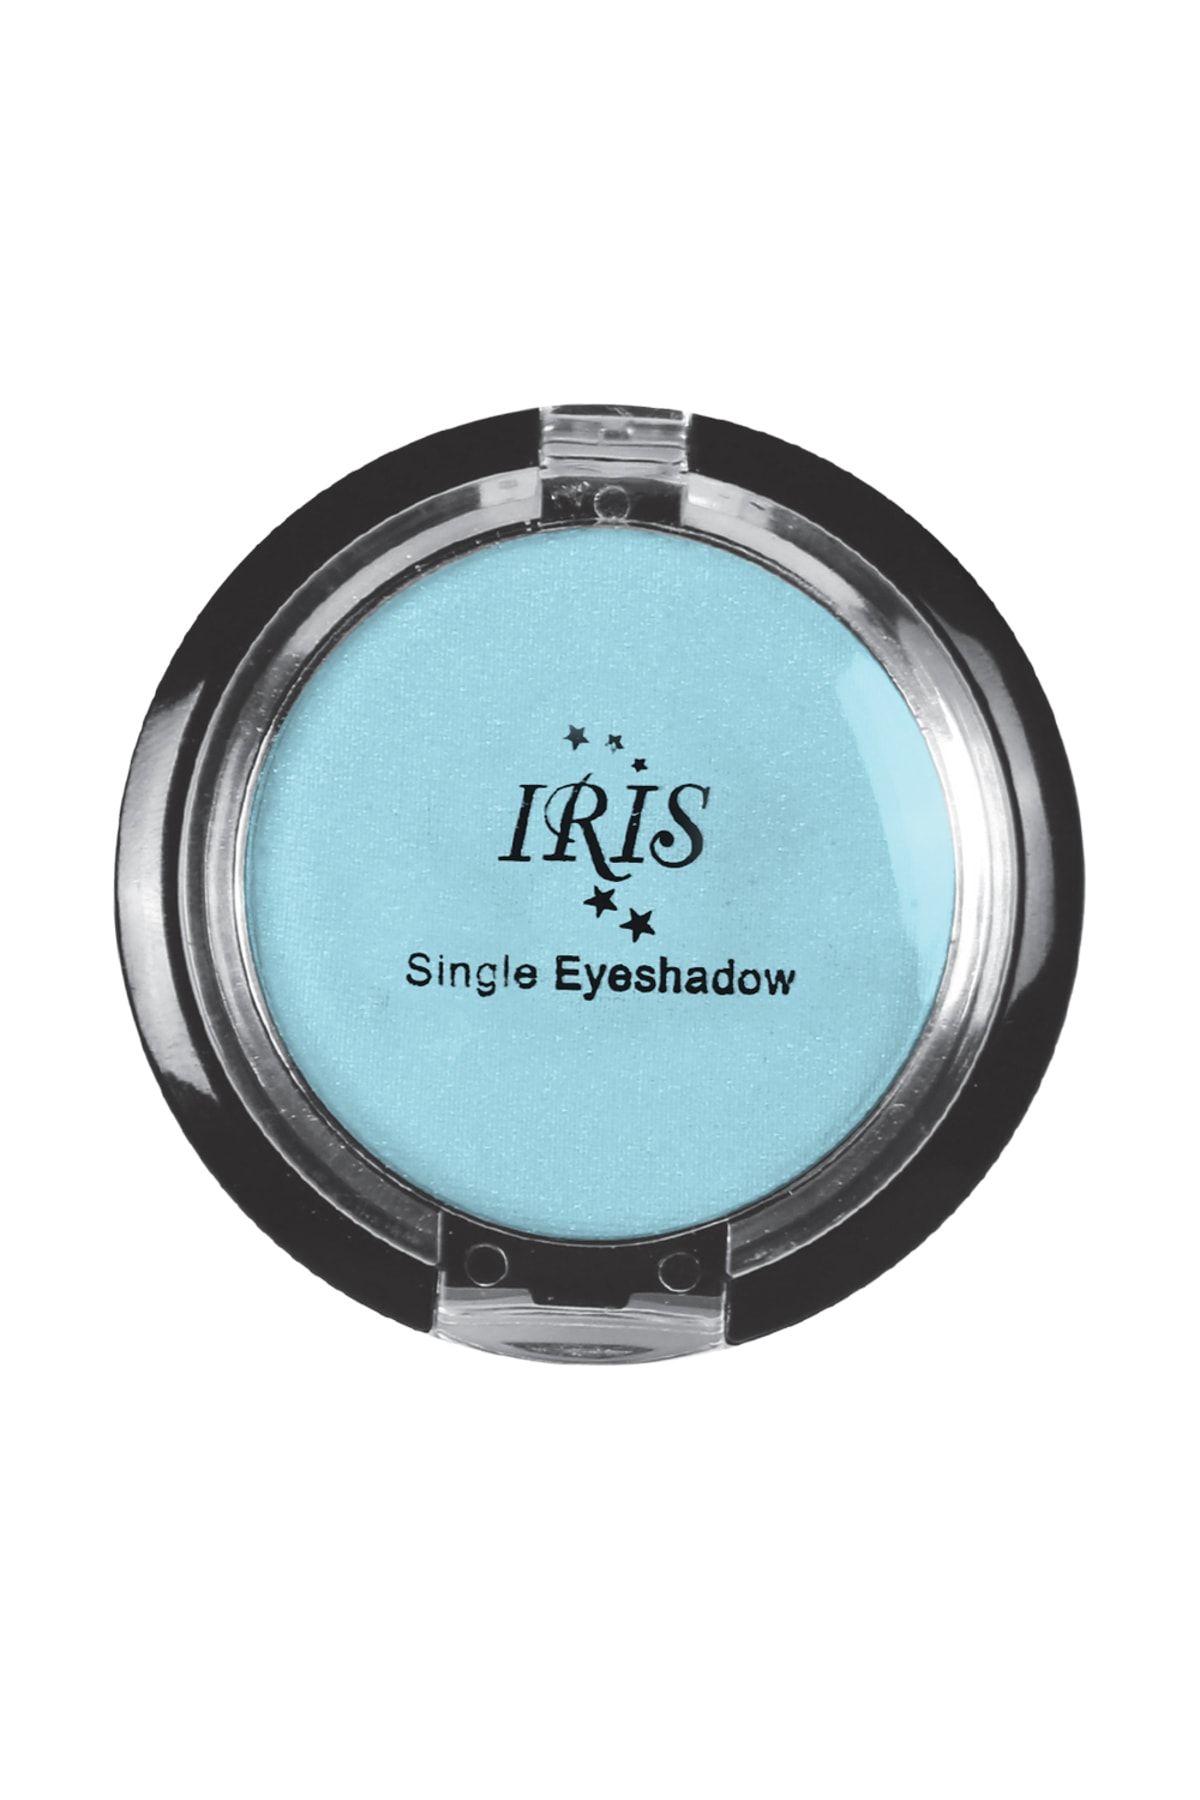 IRIS Göz Farı - Single Eyeshadow 004 8699195992713